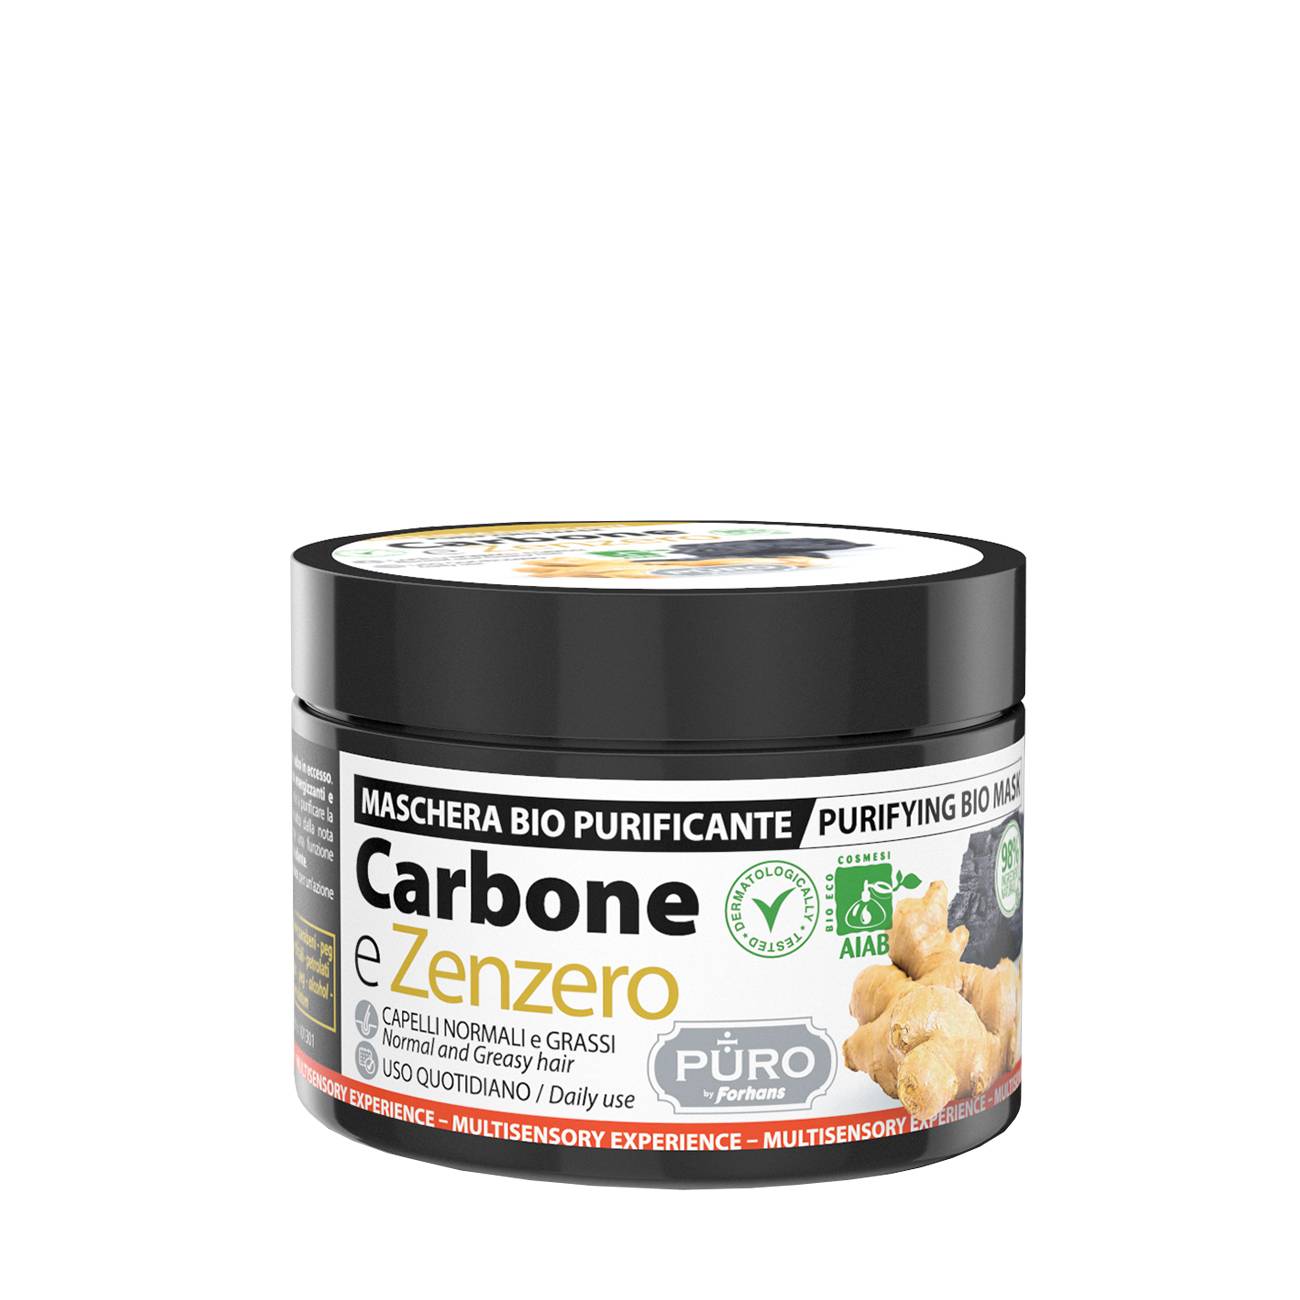 Carbone E Zenzero Hair Mask Bio 250 ml bestvalue.eu